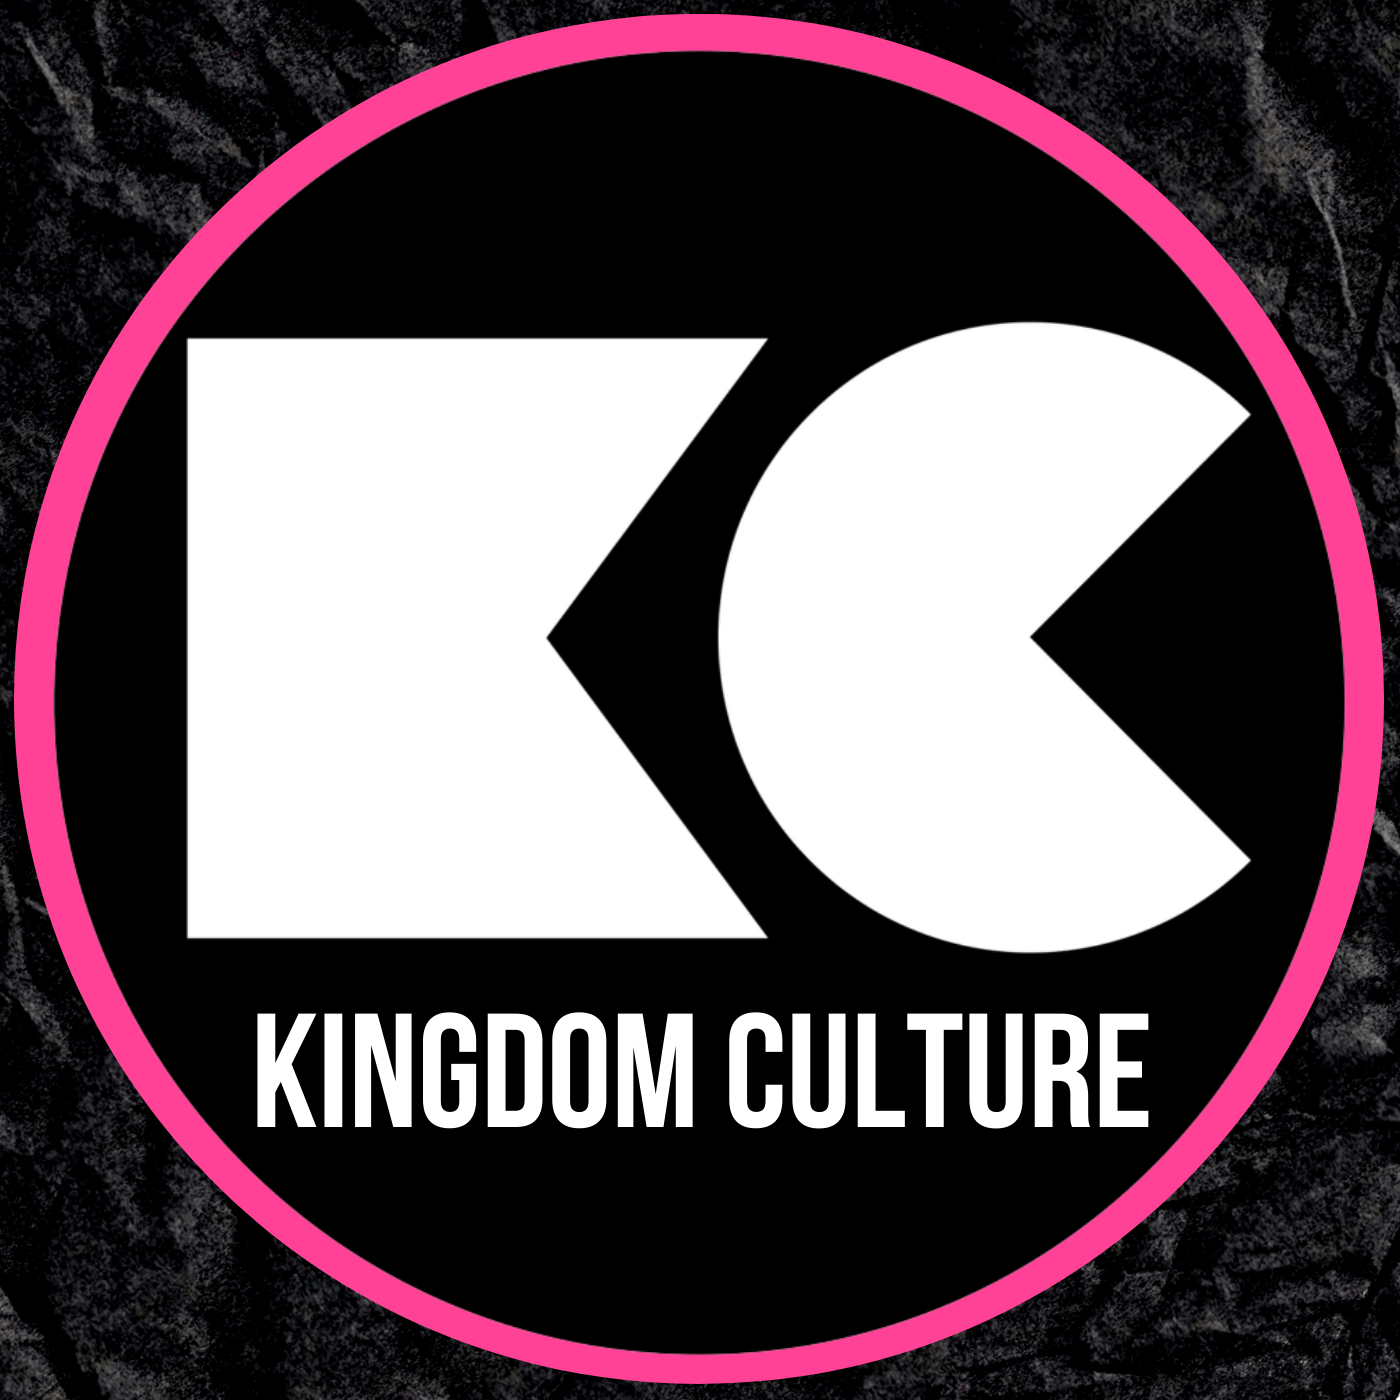 Gods plan voor relaties en seks| Kingdom Culture 1500 uur Conferentie 5 februari 2023